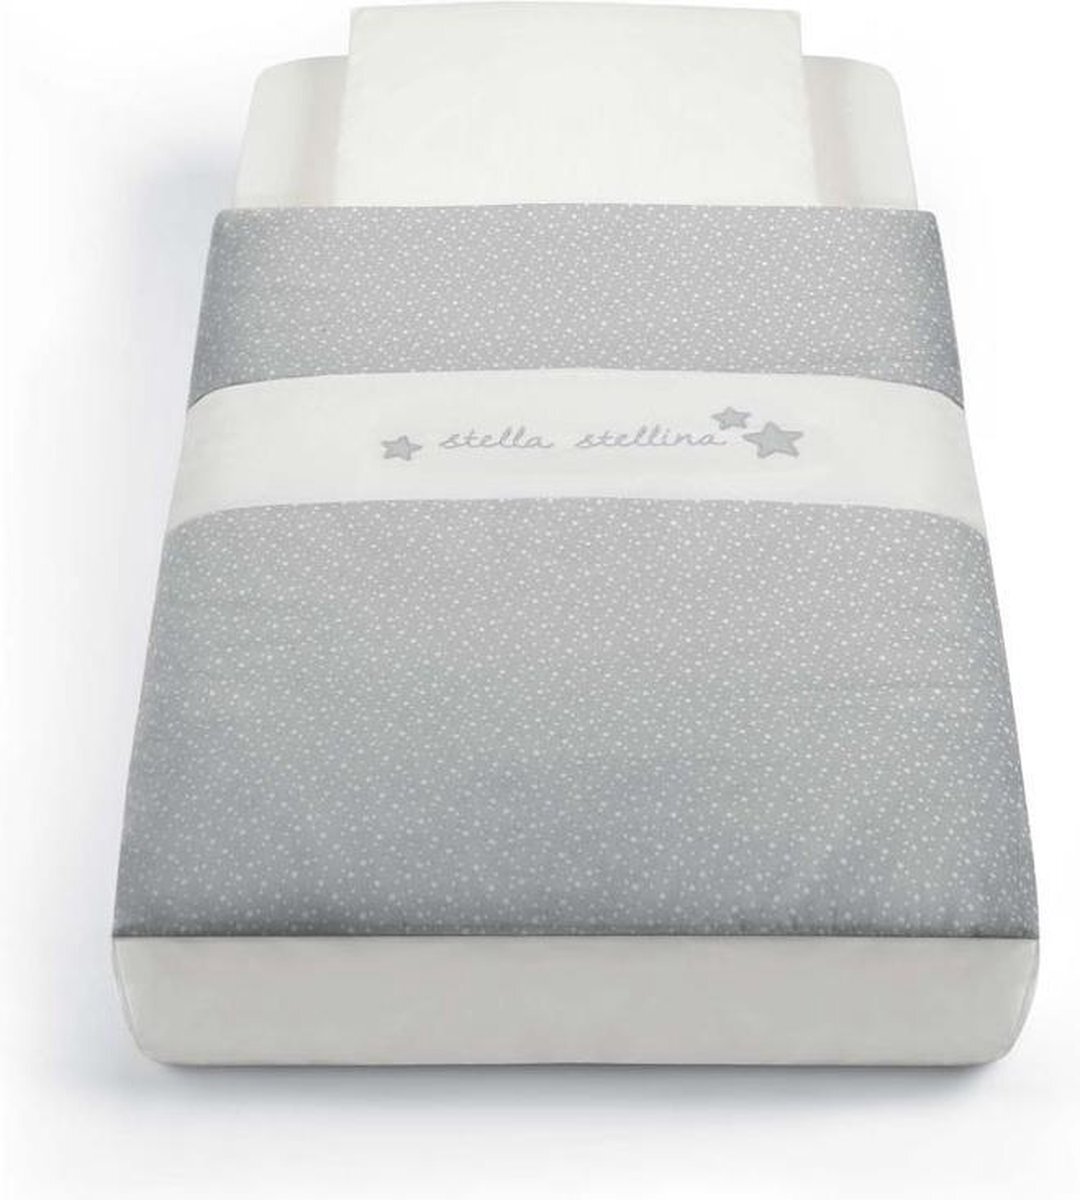 Cam Cullami Cot Bedding Kit - Baby dekbedovertrek - STELLINE - Made in Italy